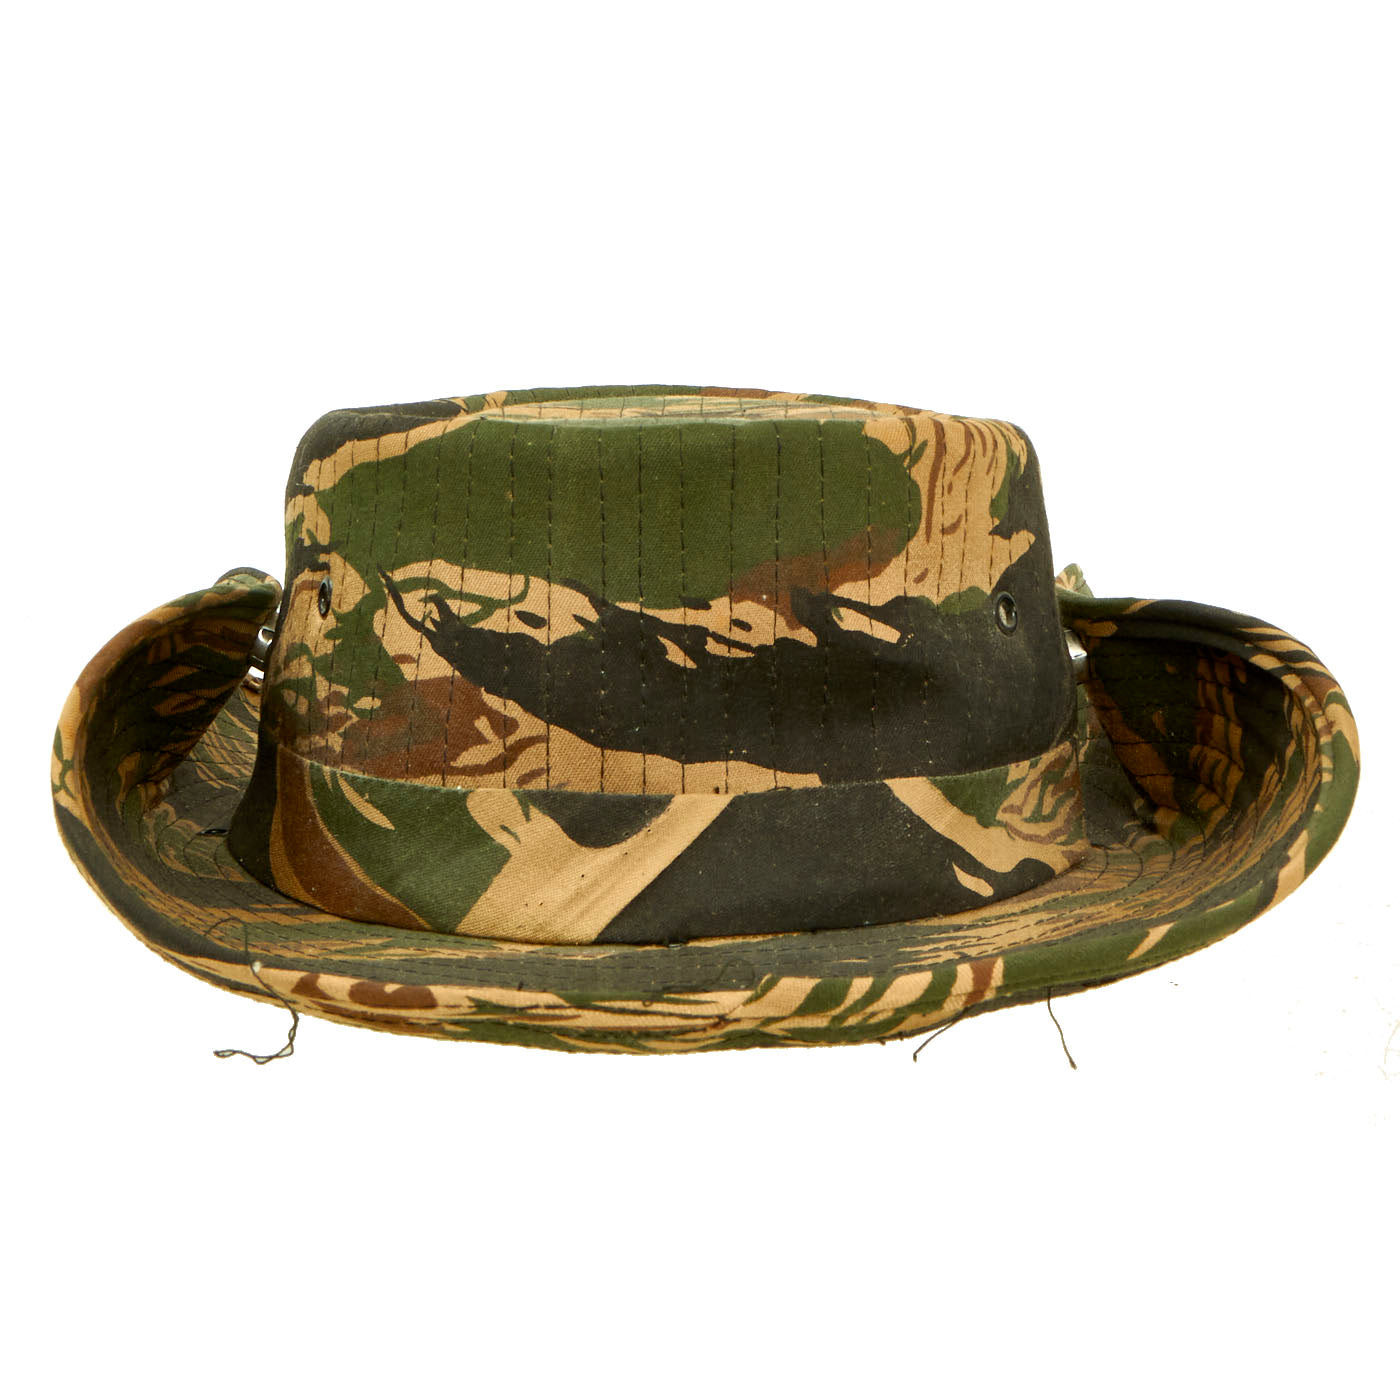 Original U.S. Vietnam War Incountry-Made Tigerstripe “Cowboy” Bush